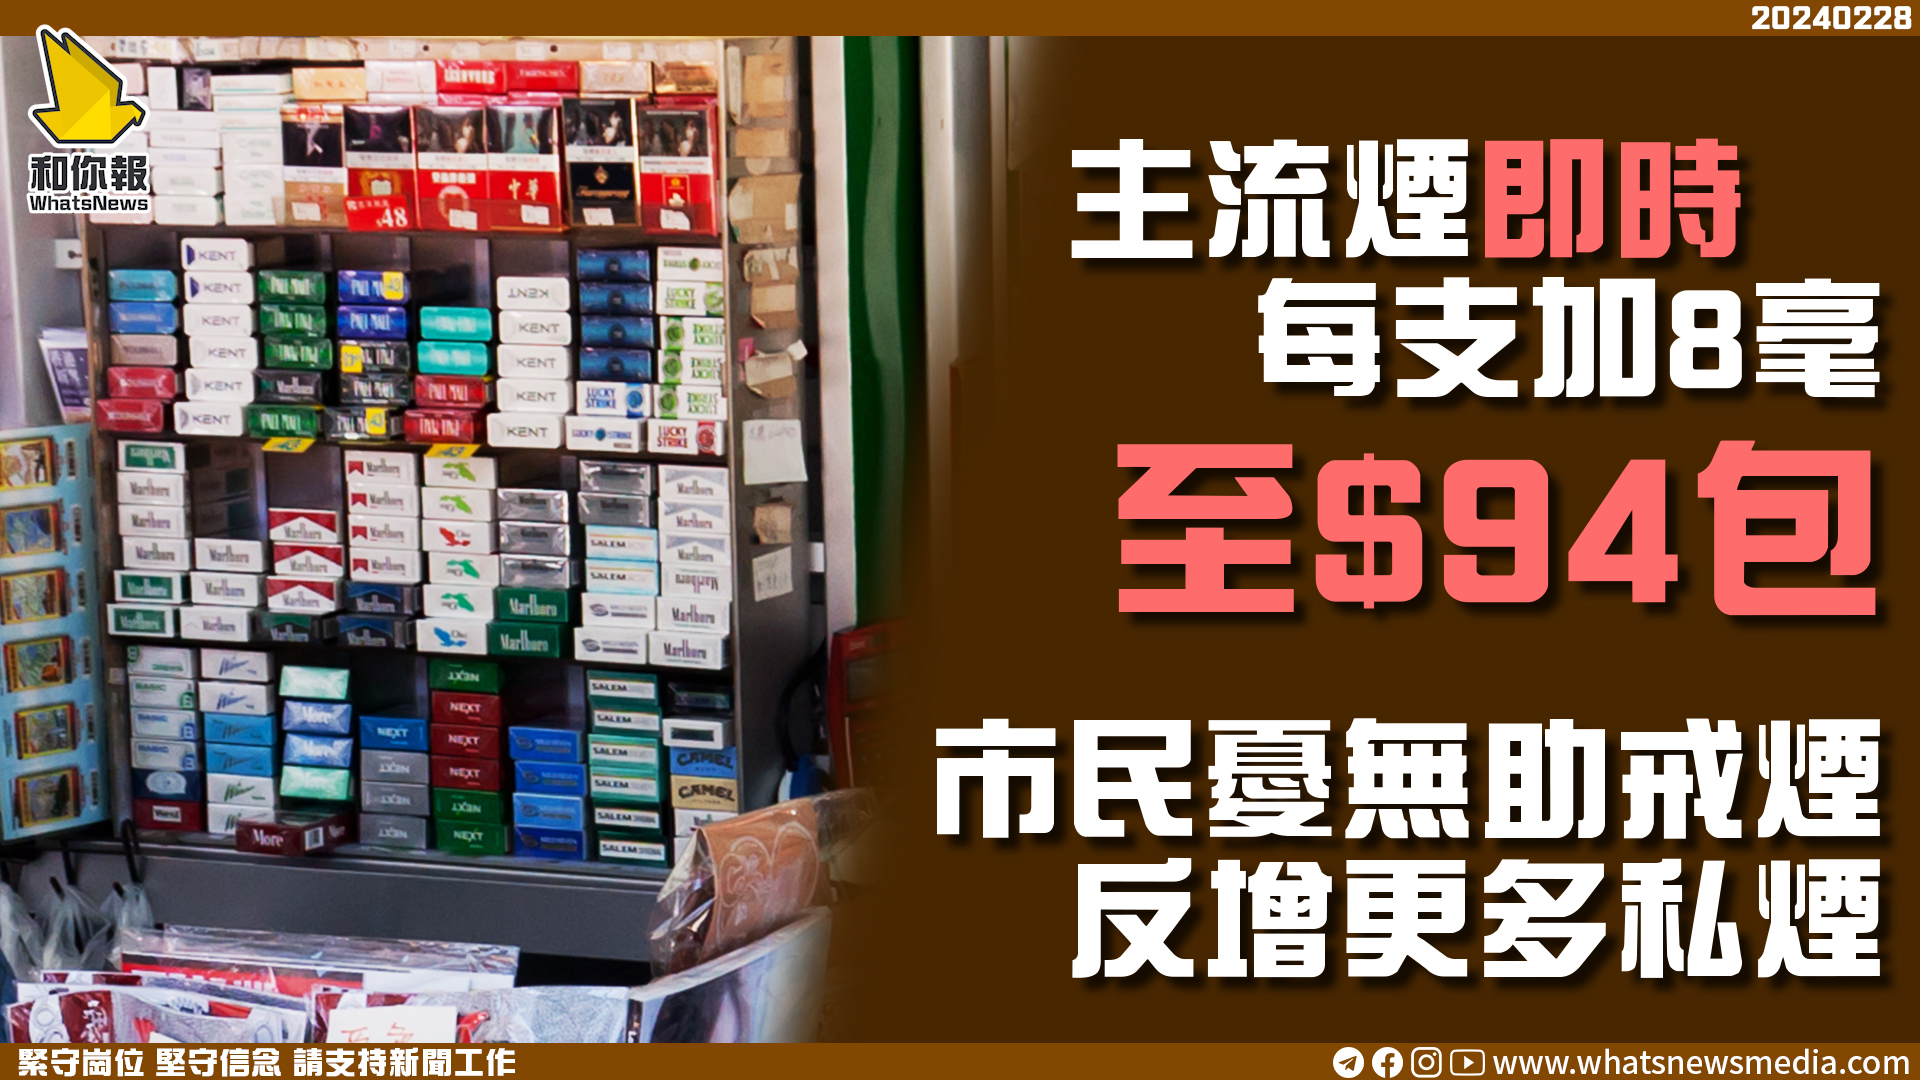 主流煙即時每支加8毫至$94包 市民憂無助戒煙反增更多私煙